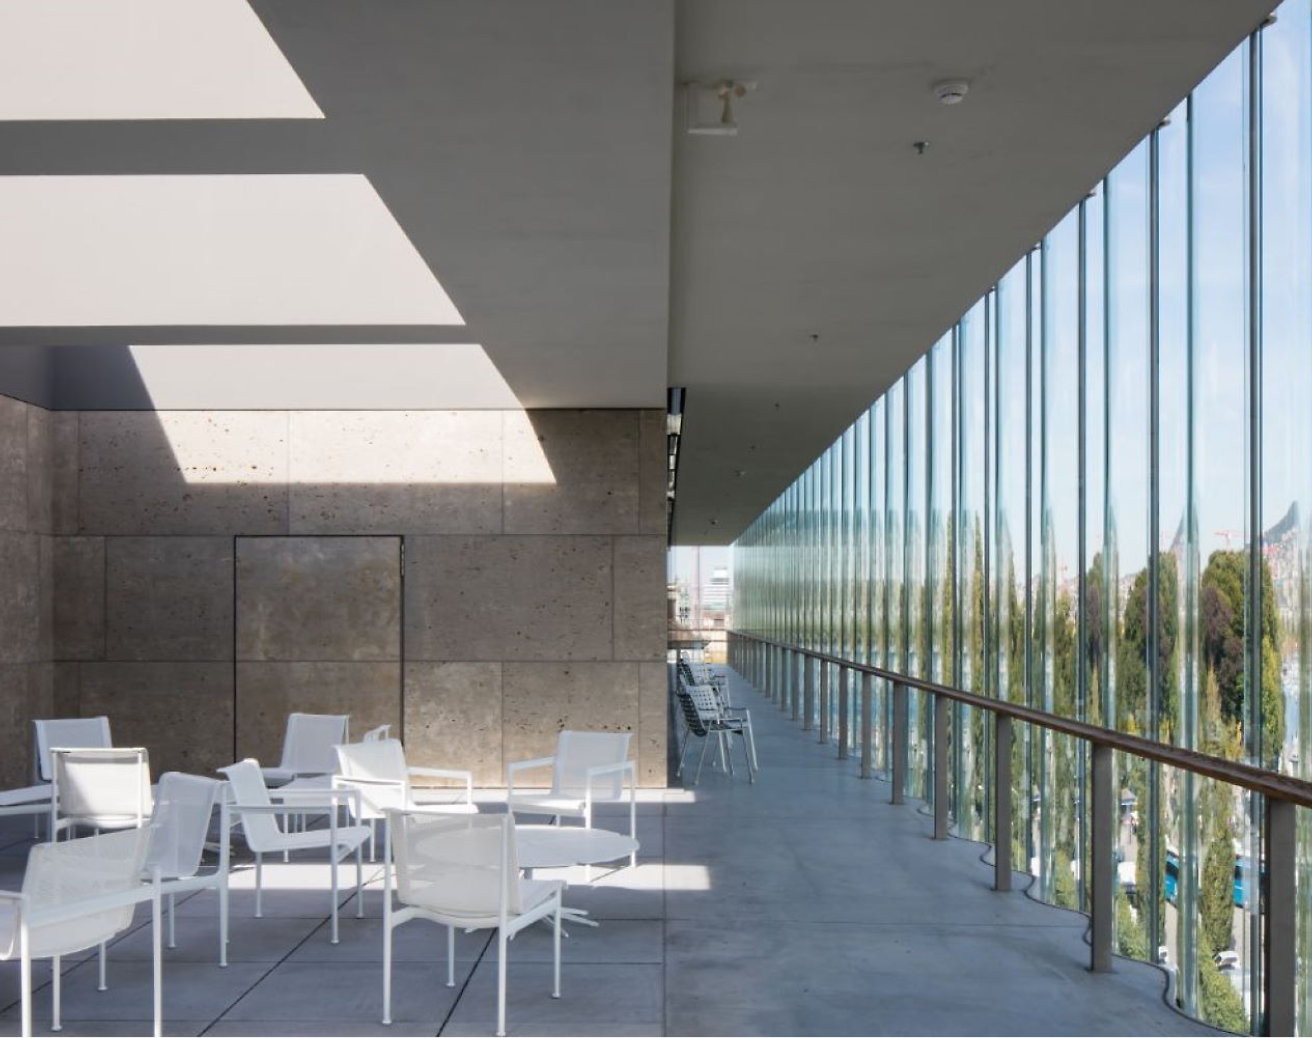 Moderna terraza exterior con sillas y mesas blancas, con grandes ventanas de cristal y sombras geométricas